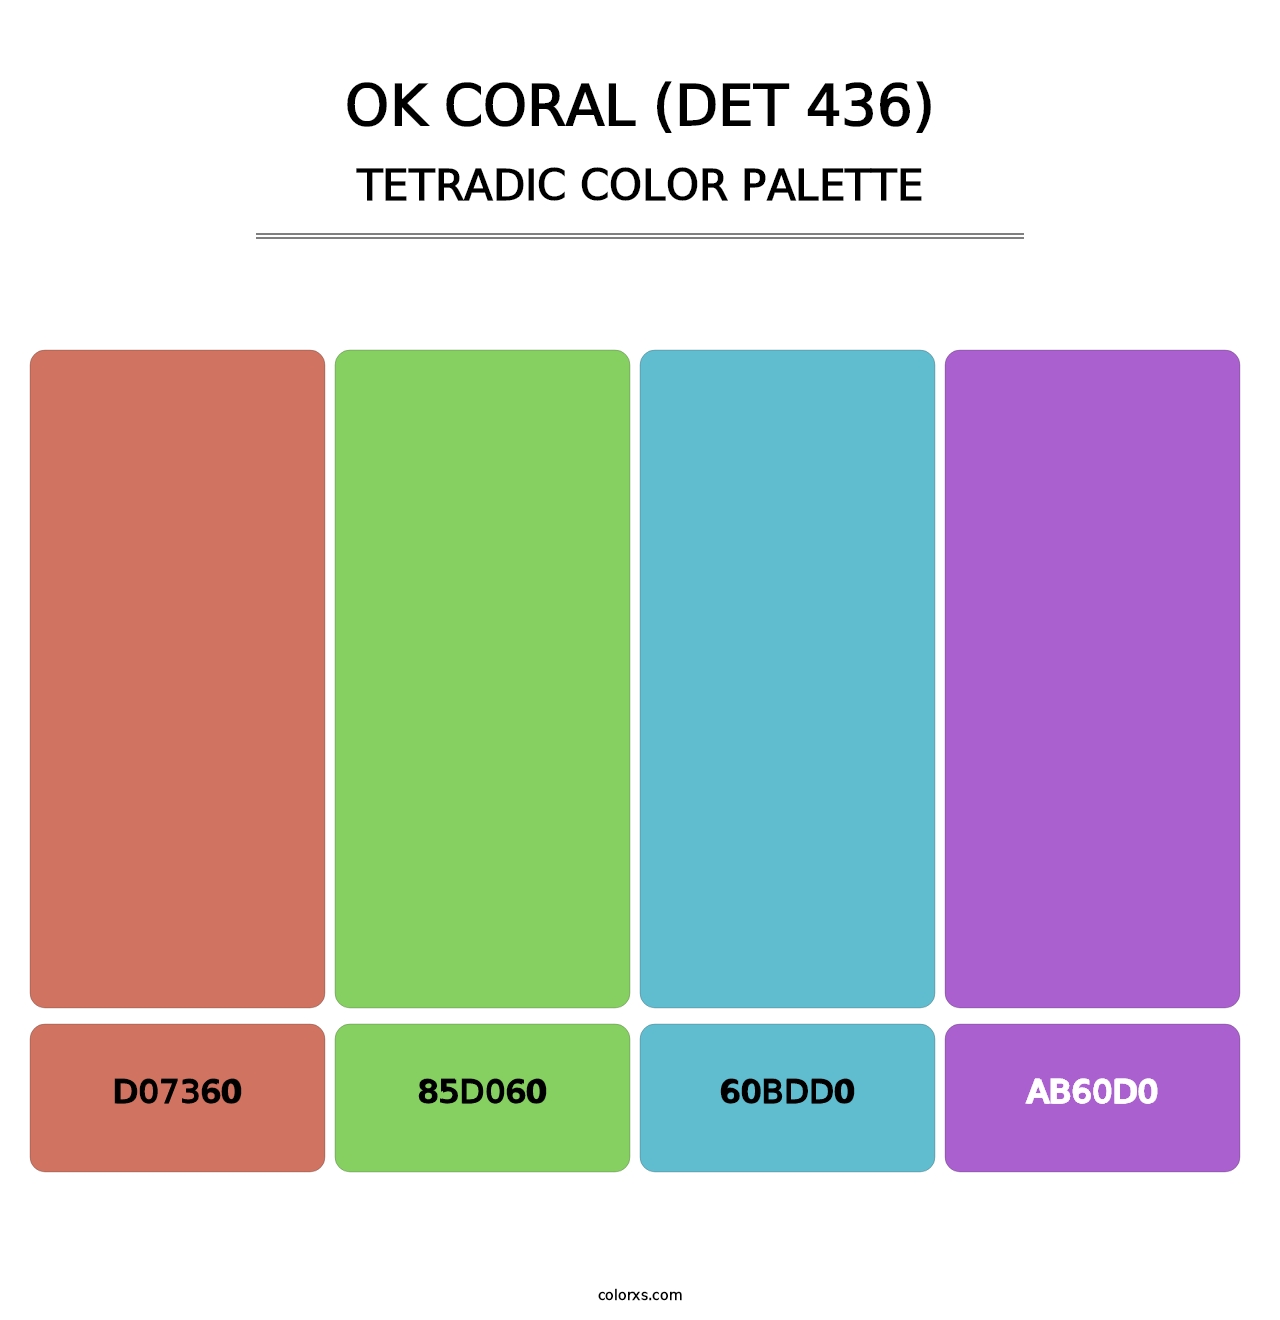 OK Coral (DET 436) - Tetradic Color Palette